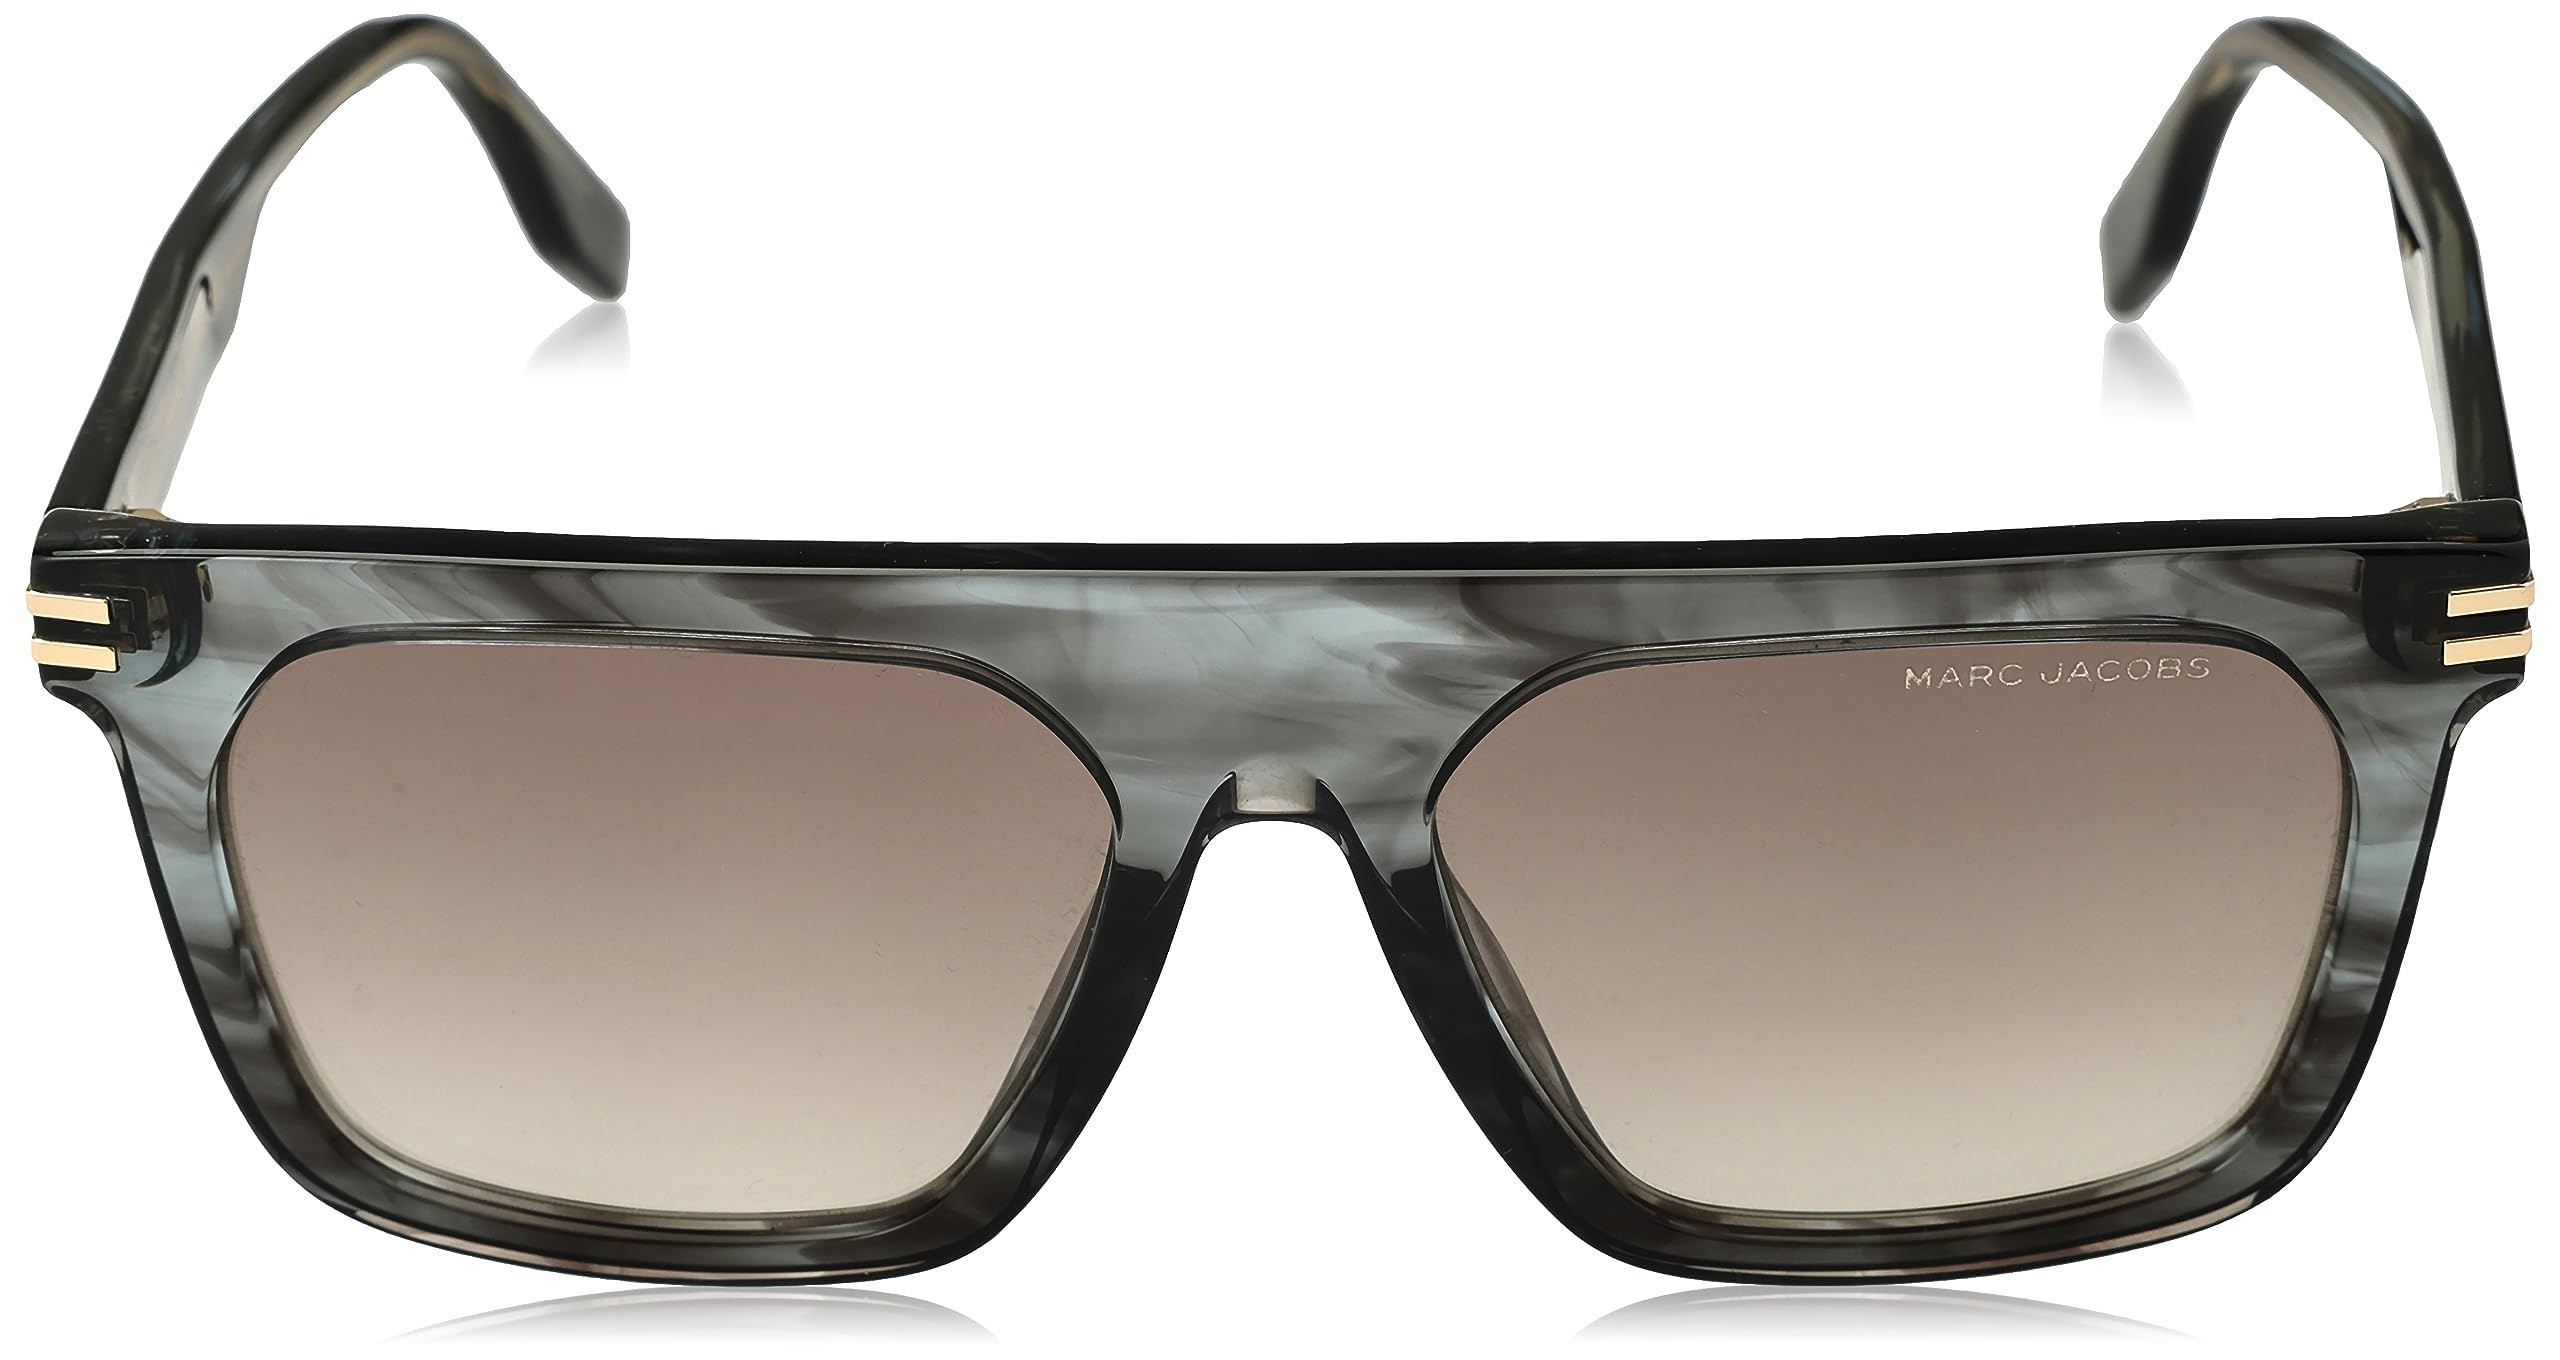 bien vendre Marc Jacobs Sunglasses Mixte ziuPuR5IN Boutique